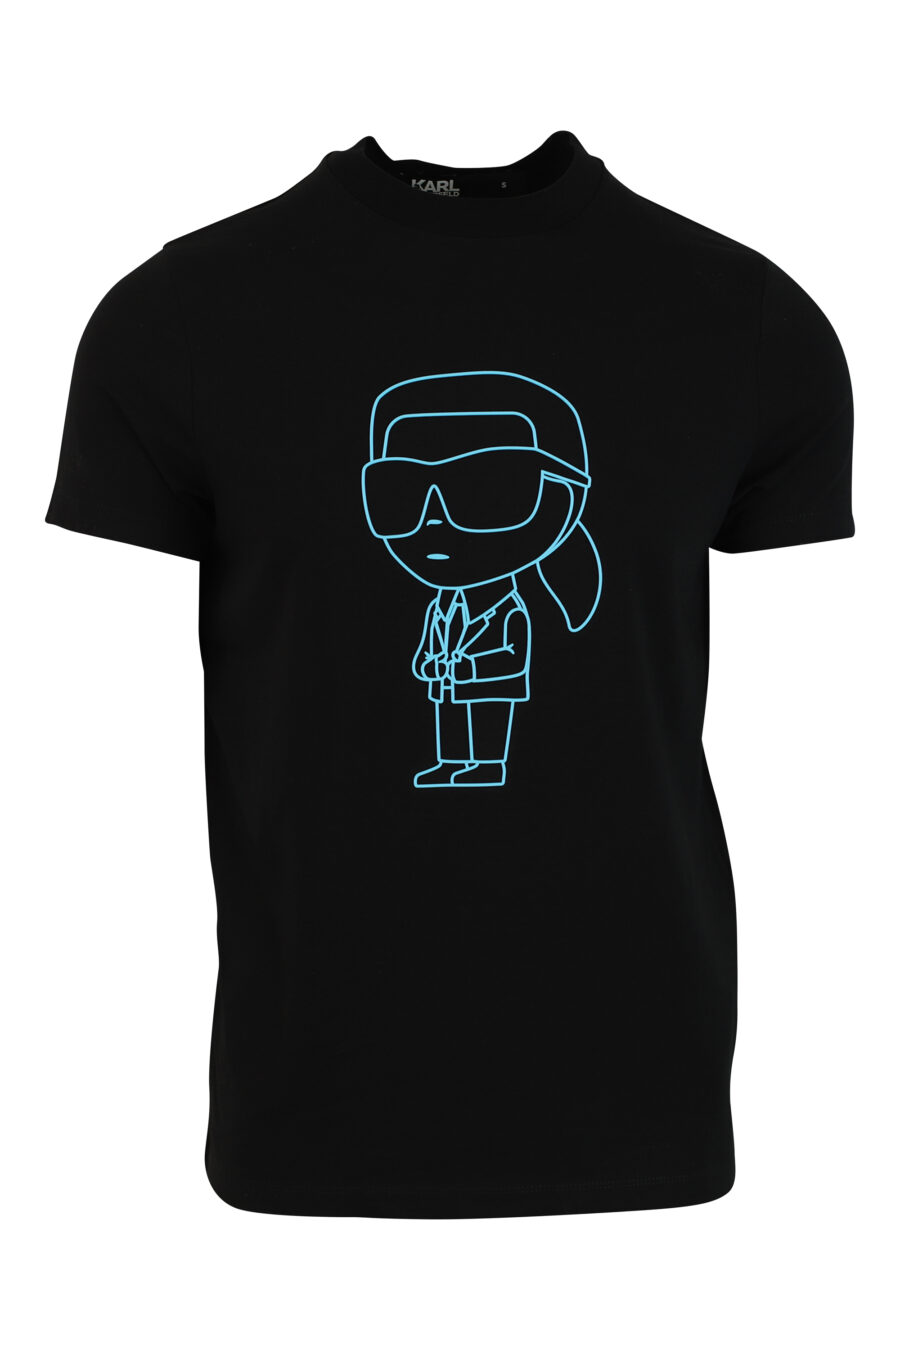 Camiseta negra con maxilogo en silueta azul - 4062226292504